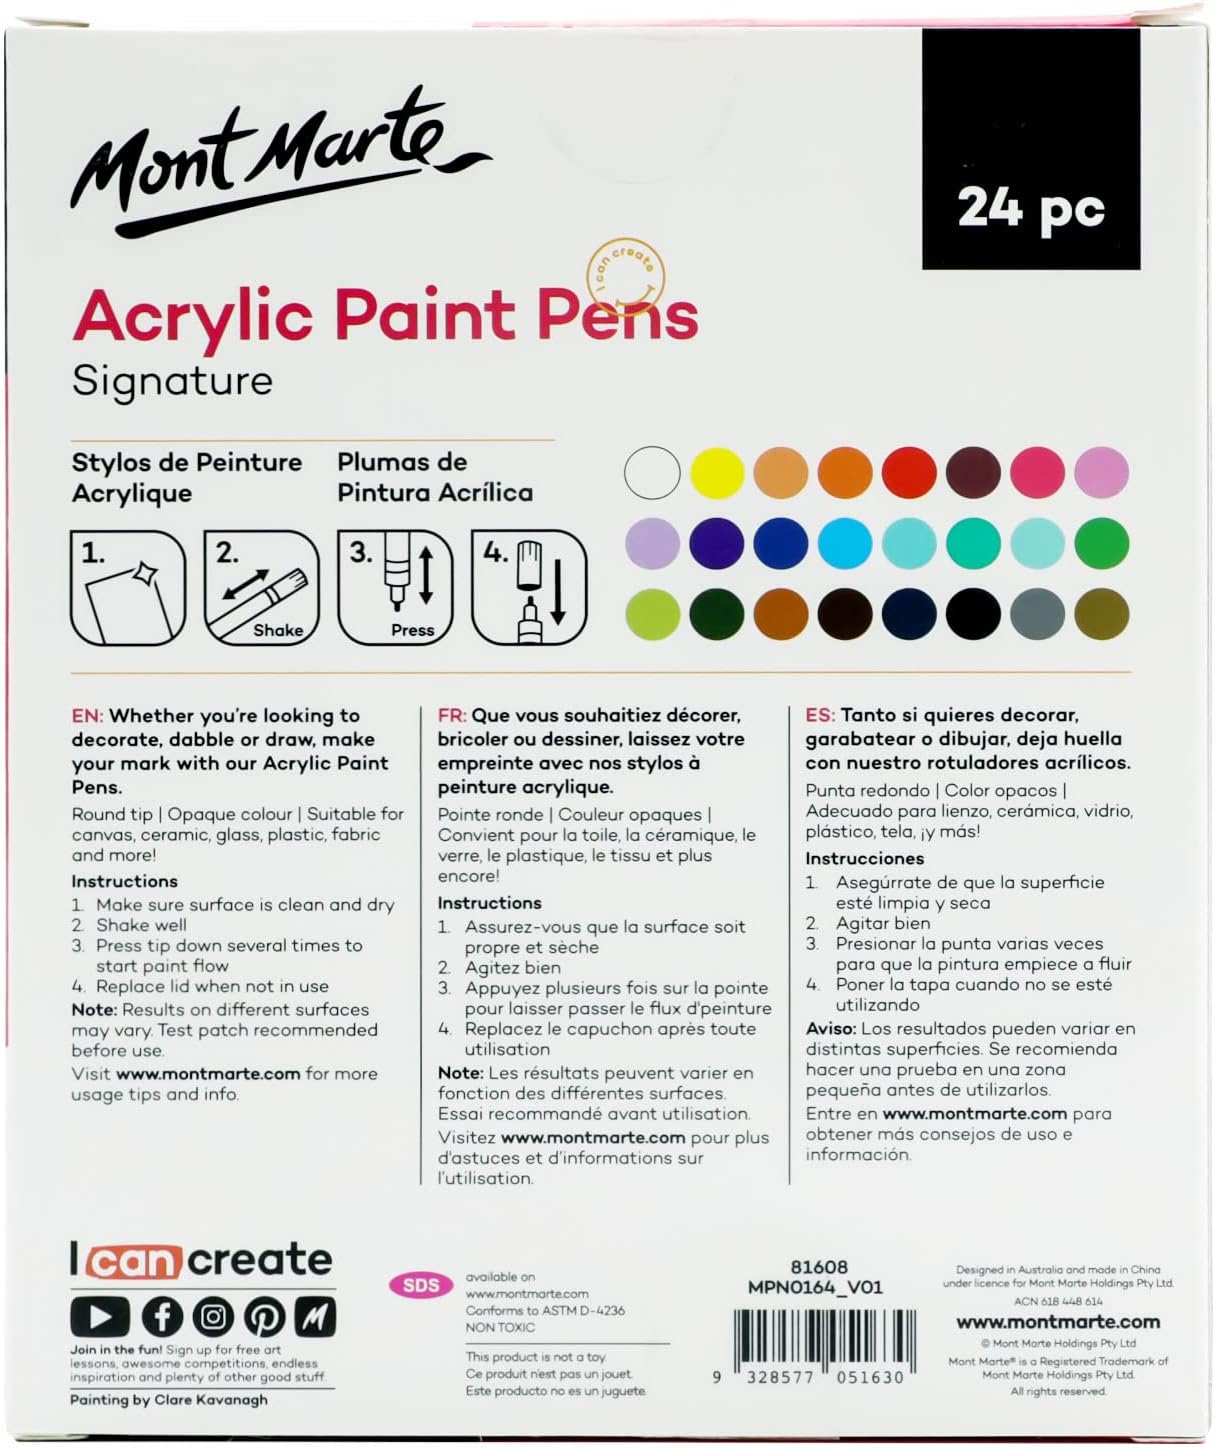 Mont Marte Signature Acrylic Paint Pens,24 Piece,Round Tip (3mm)